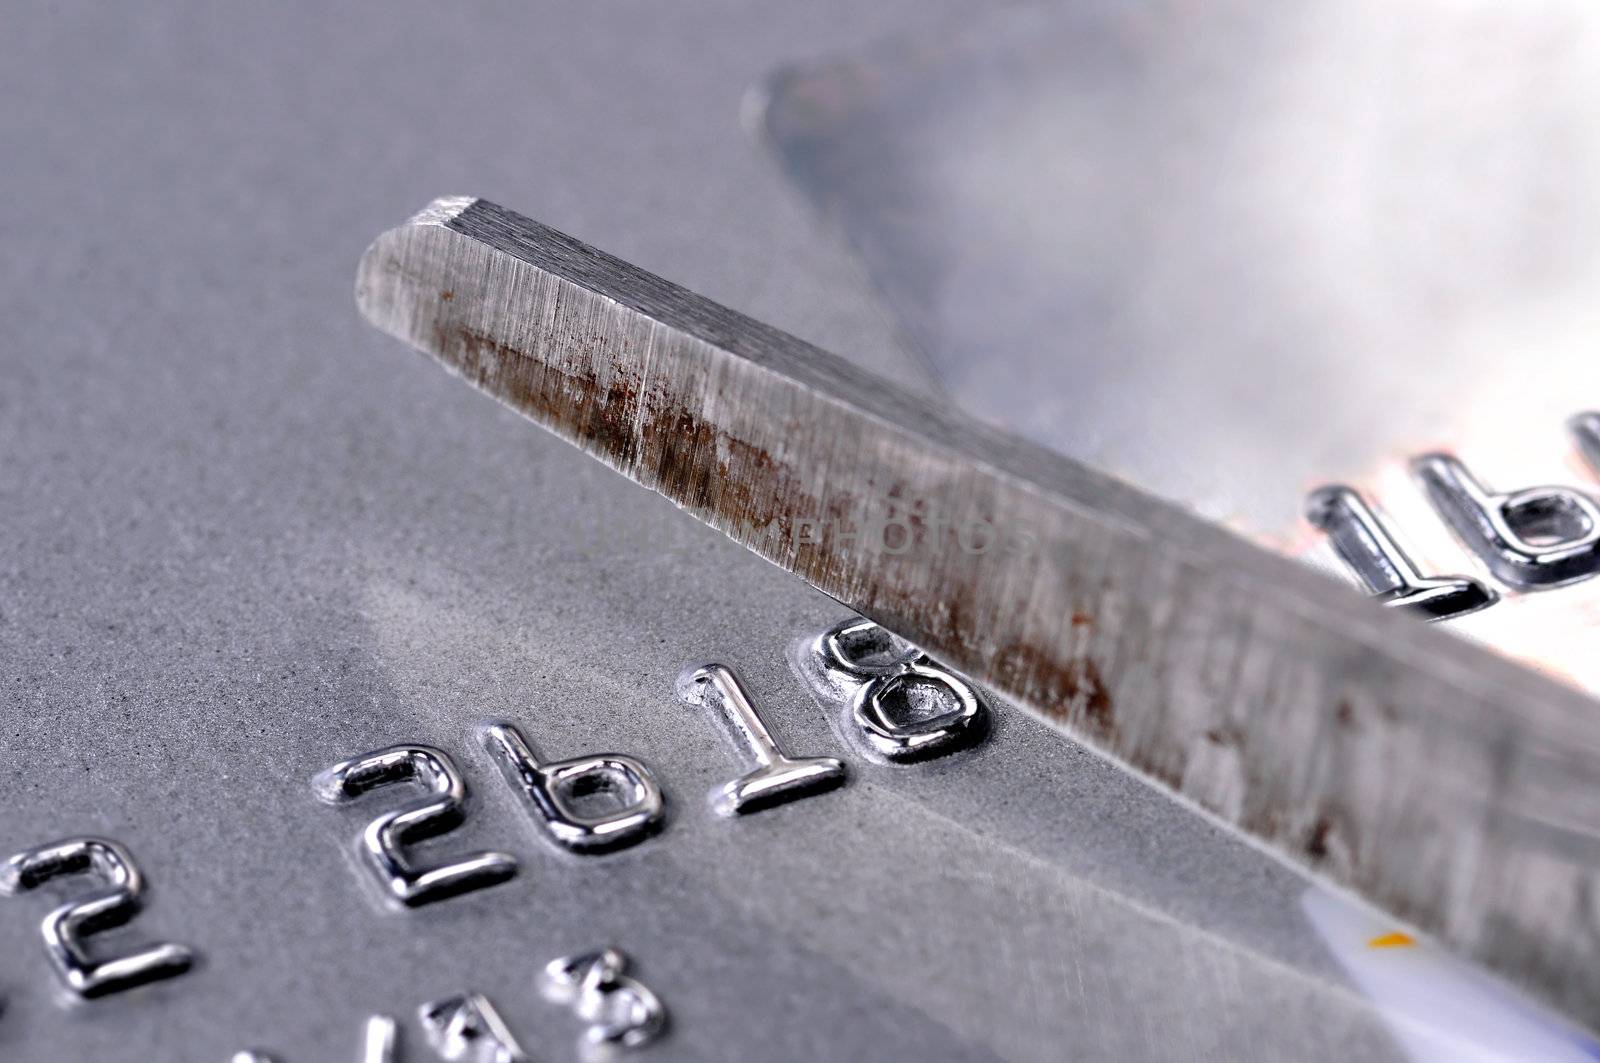 Scissors cutting up a silver credit card